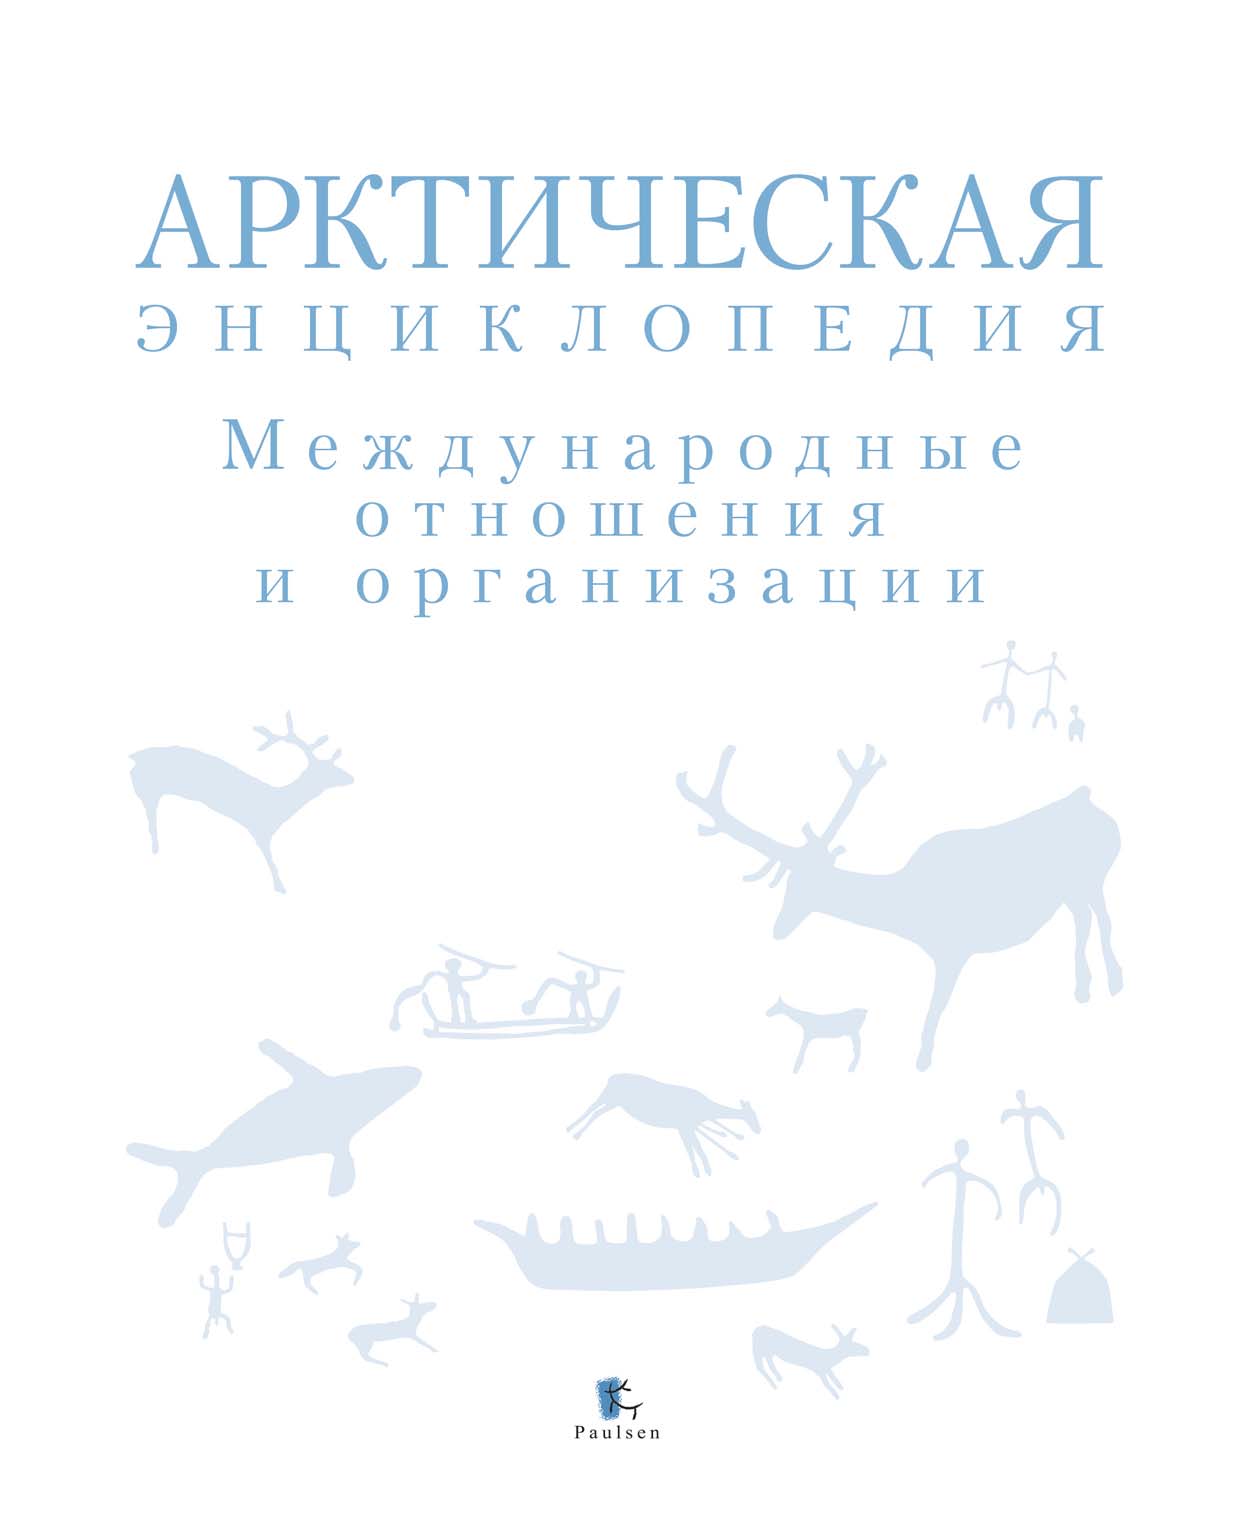 Арктическая энциклопедия. Международные отношения и организации